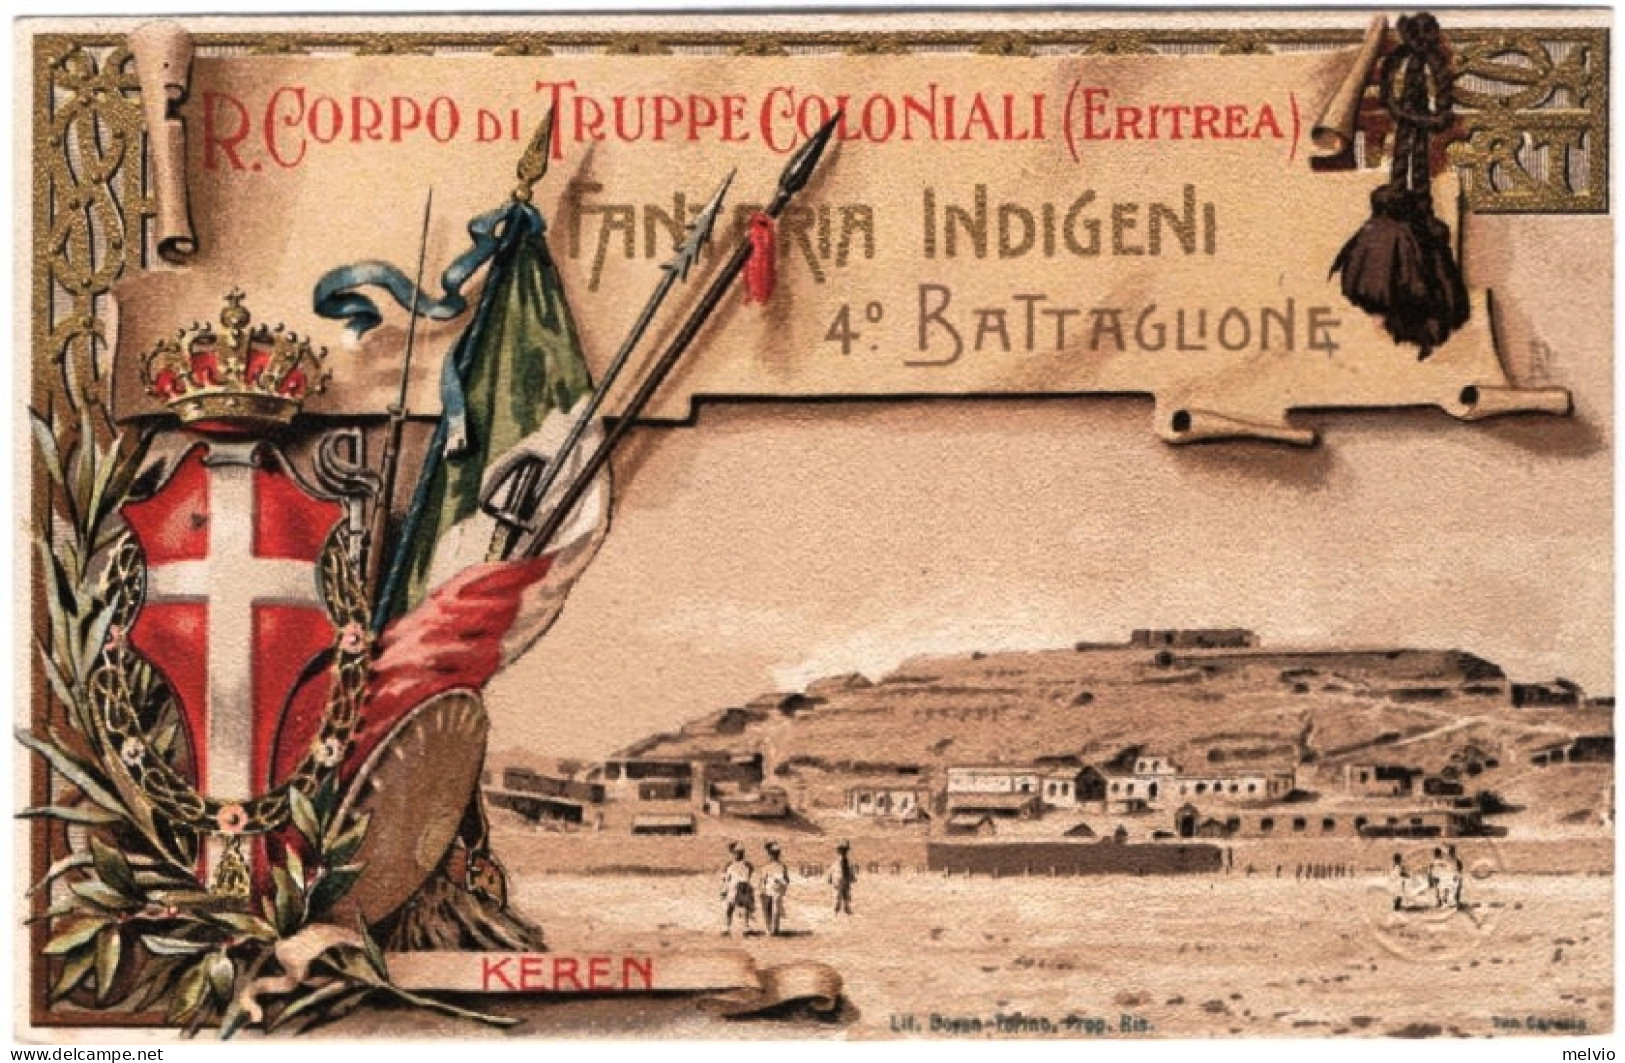 R.Corpo Truppe Coloniali Fanteria Indigeni Keren 4^ Battaglione - Patriotiques